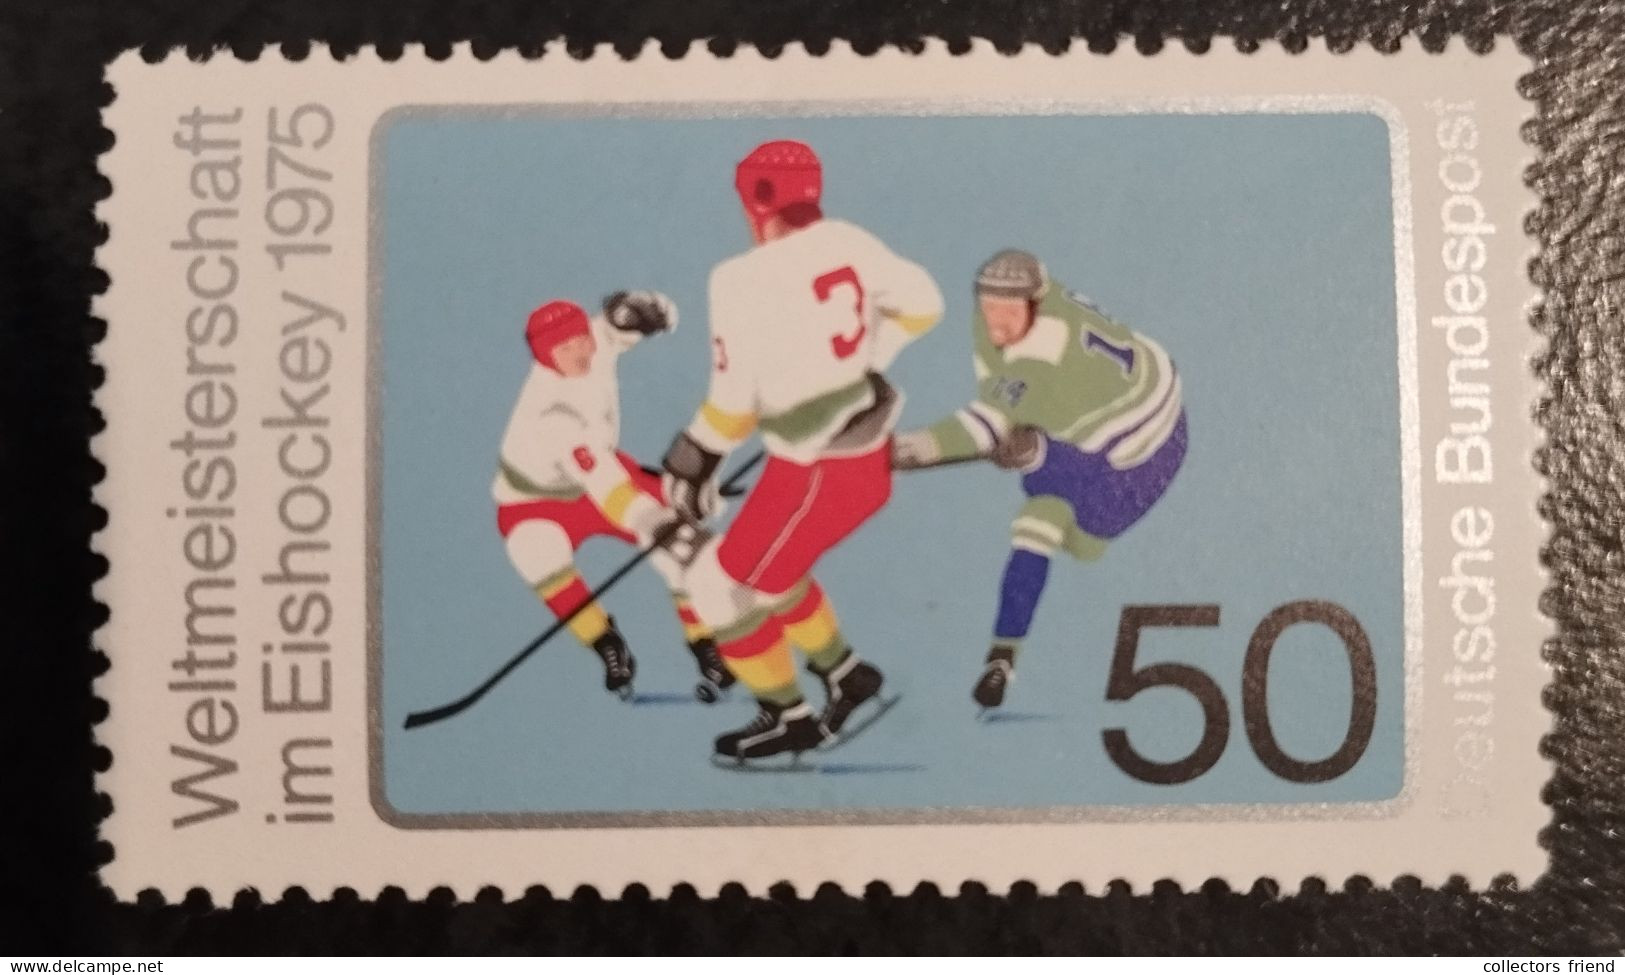 Germany BRD - 1975 - Eishockey, Icehockey  - MNH** - Hockey (Ice)